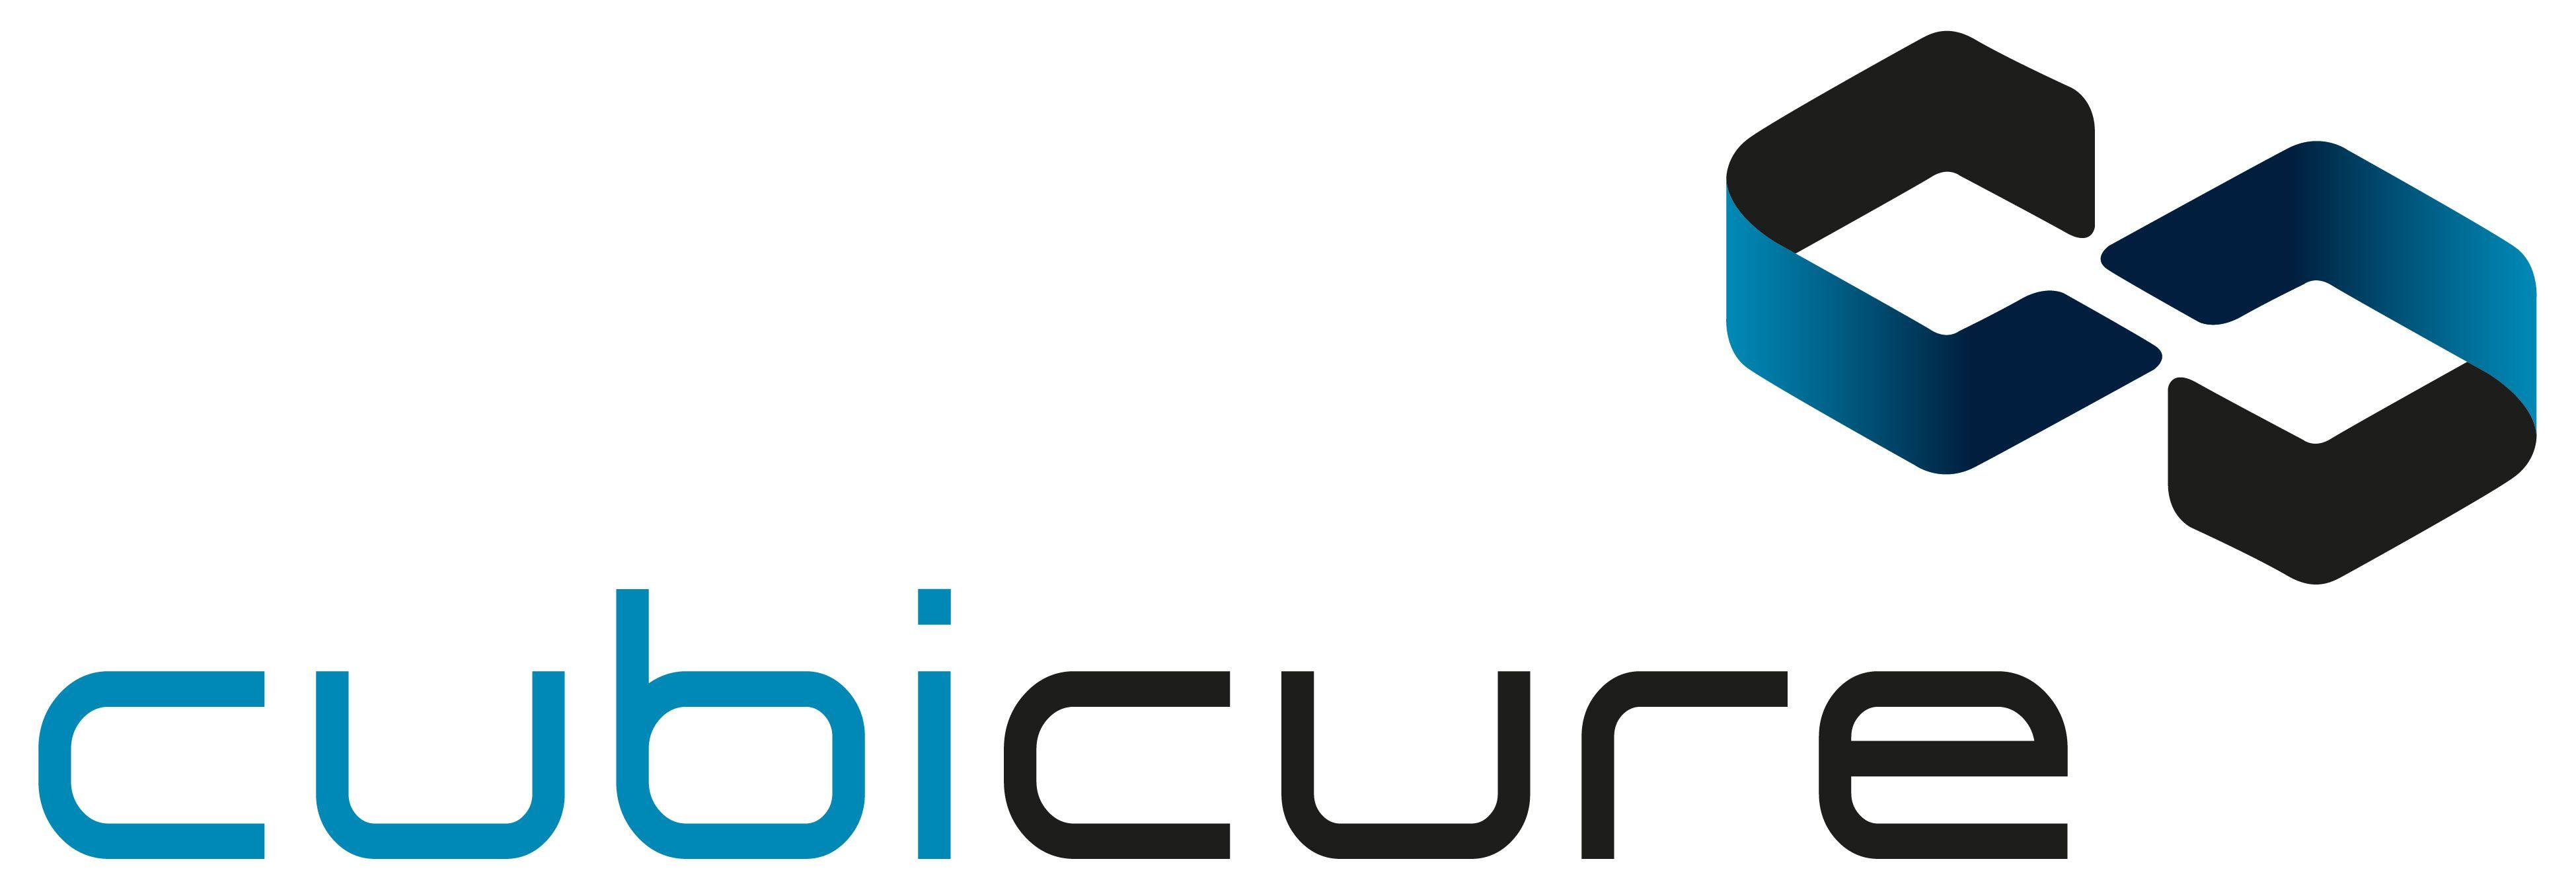 Ure Logo - cubicure - Press & Download